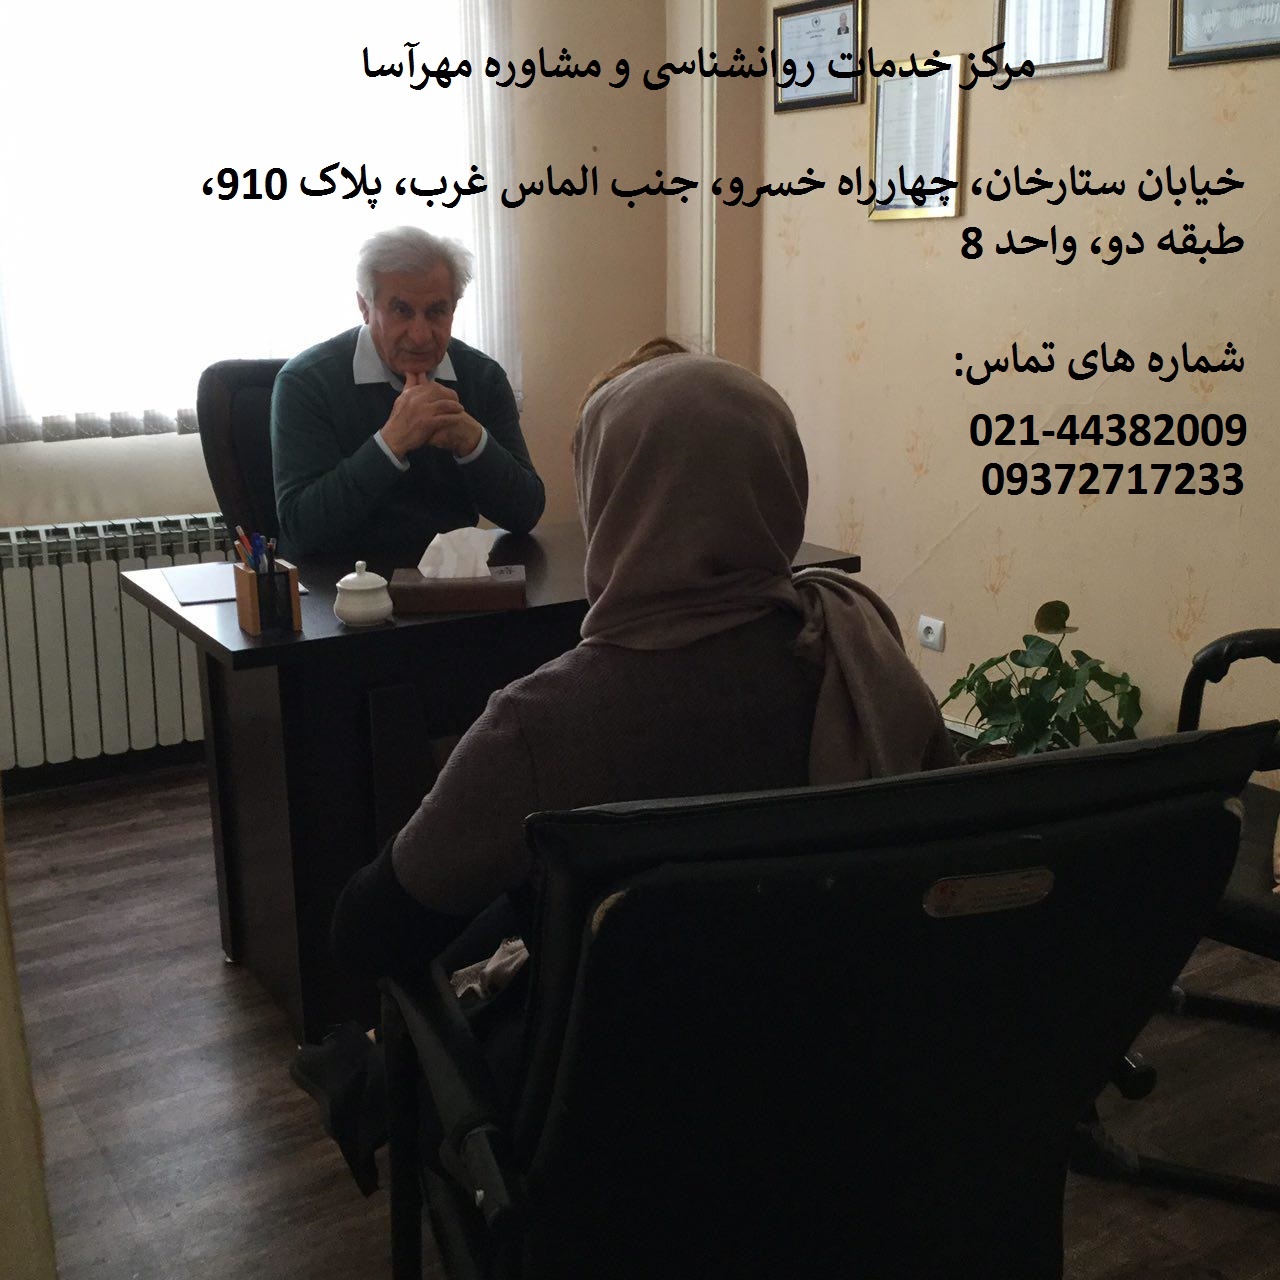 مرکز مشاوره روانشناسی در غرب تهران
